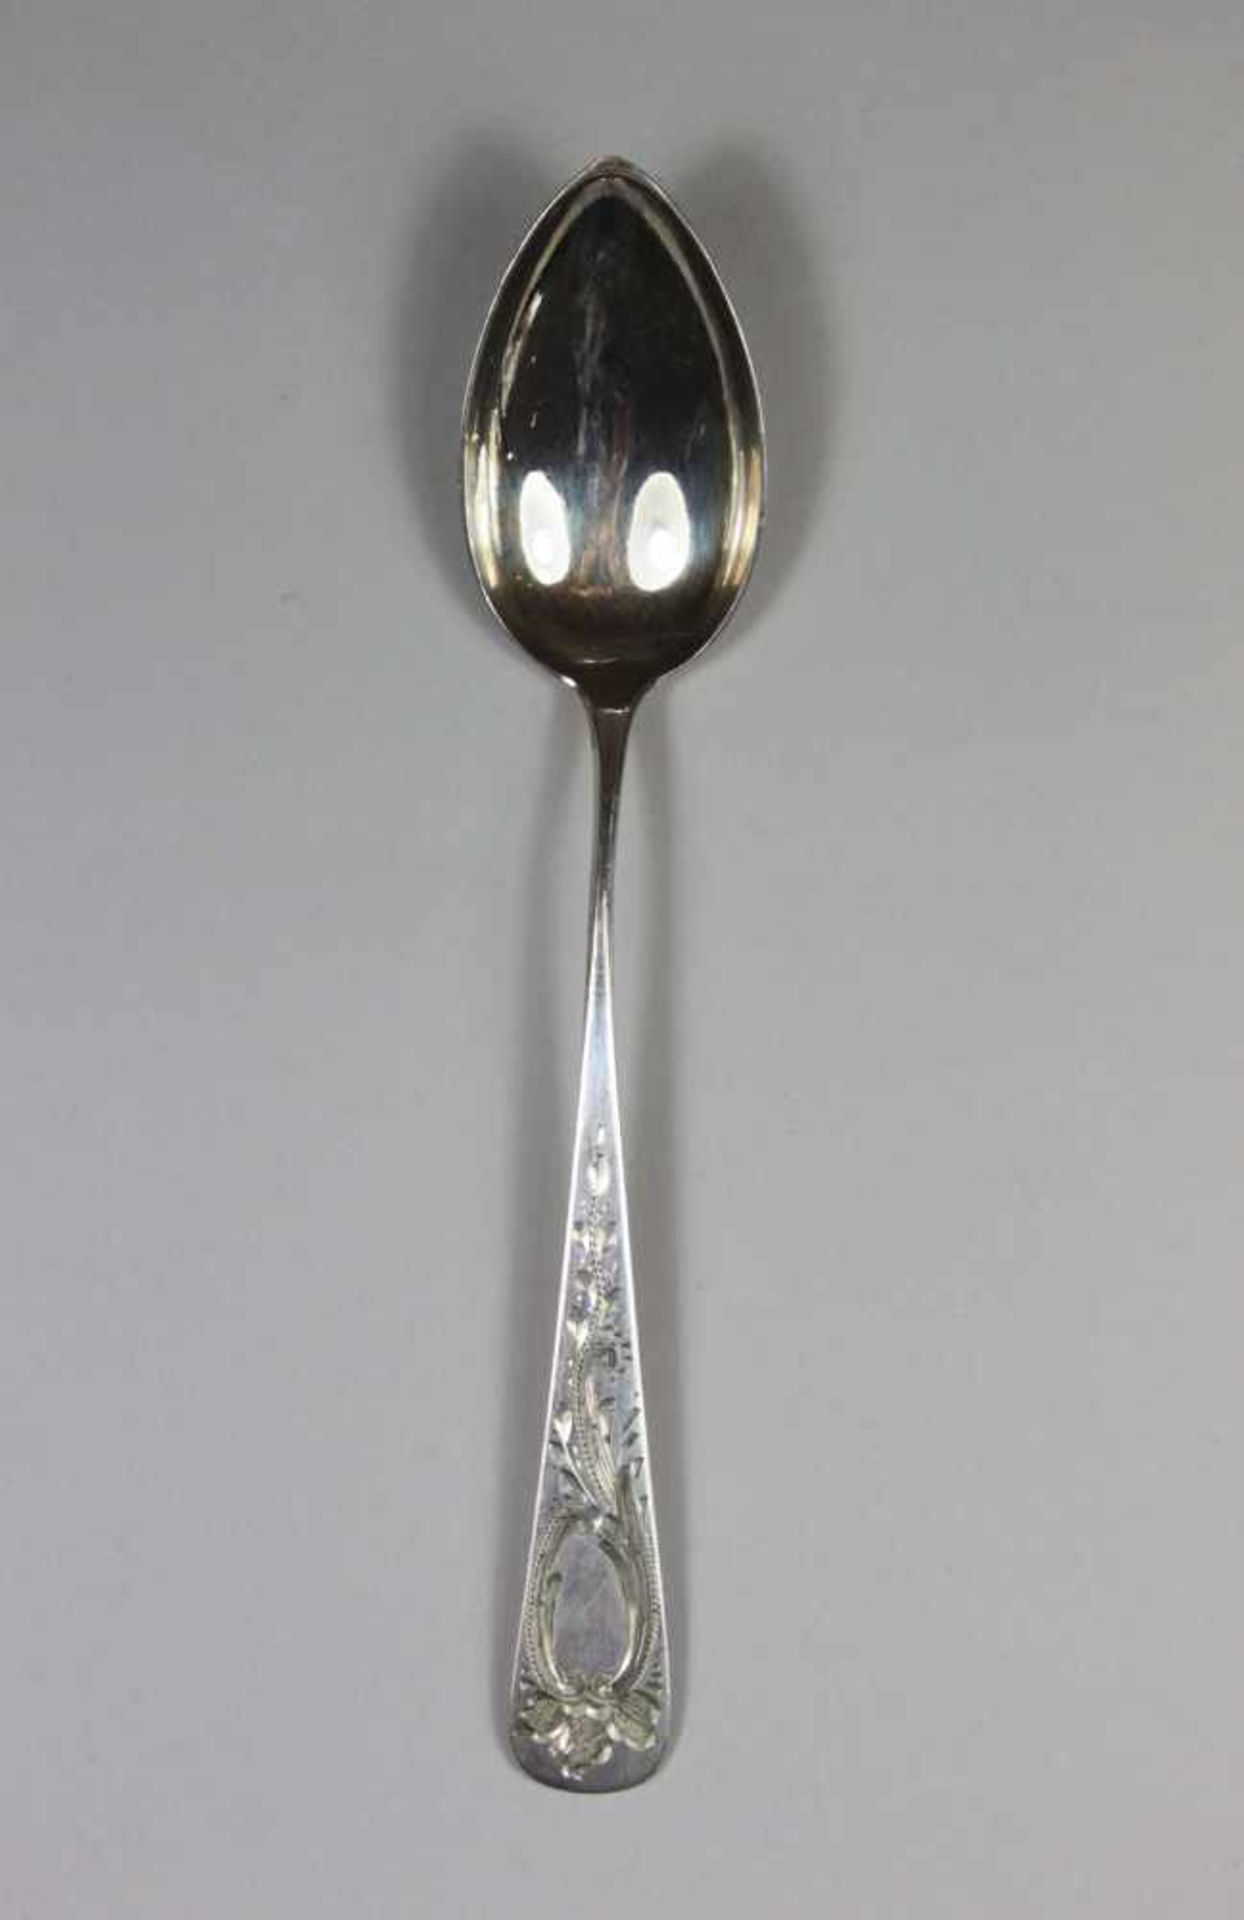 Sechs Kaffeelöffel, Silber 800 Halbmond Krone, W. Ramm, Ziergravur, 50,8g, L.: 13 cm. - Bild 2 aus 3